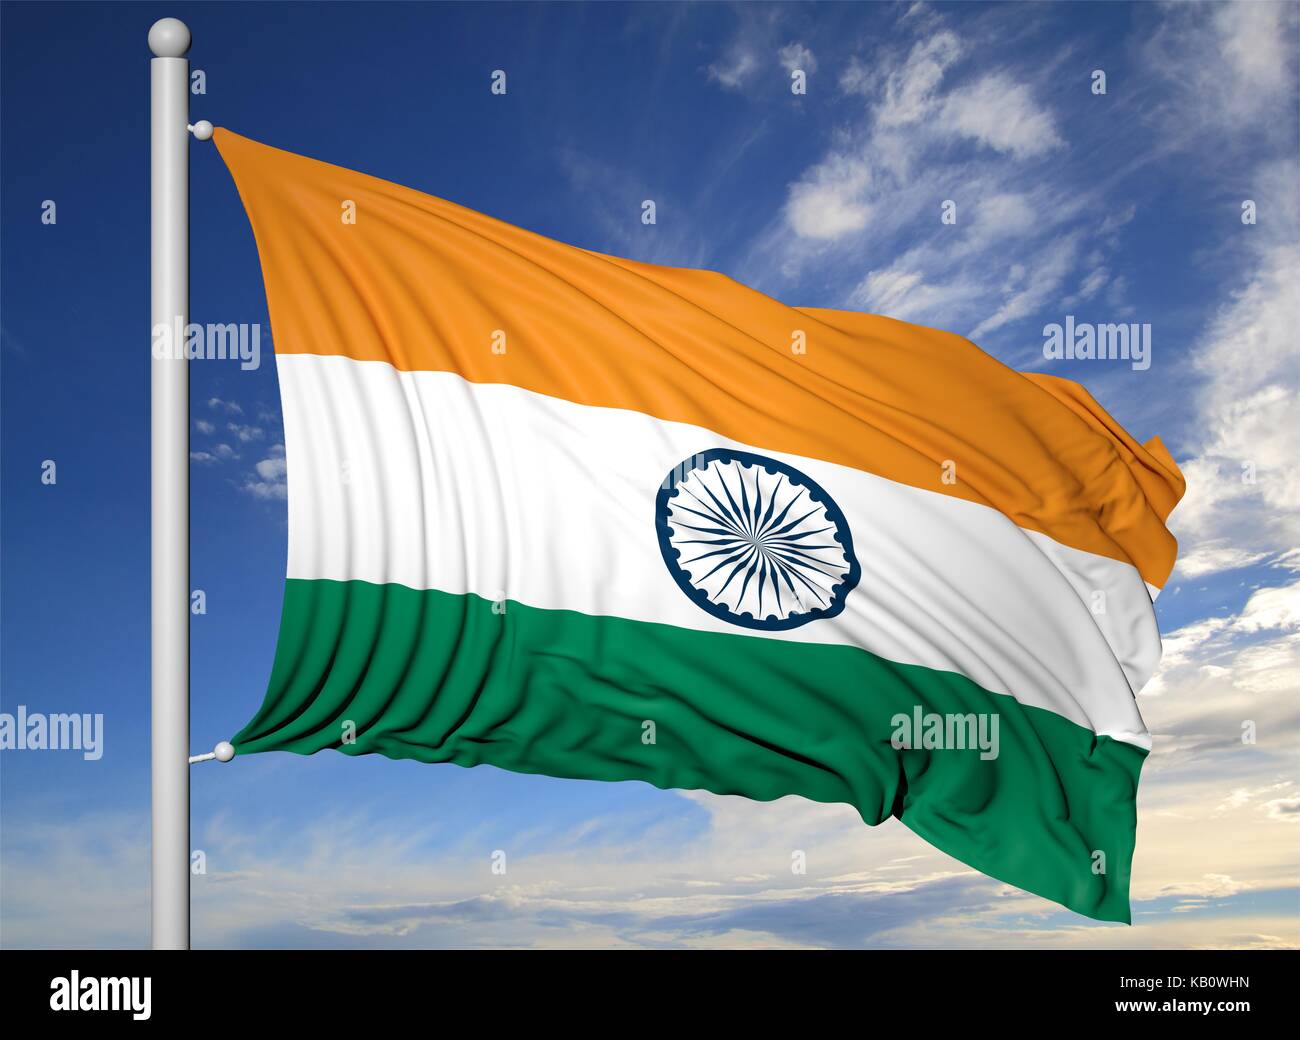 Waving flag of India on flagpole, on blue sky background. Stock Photo